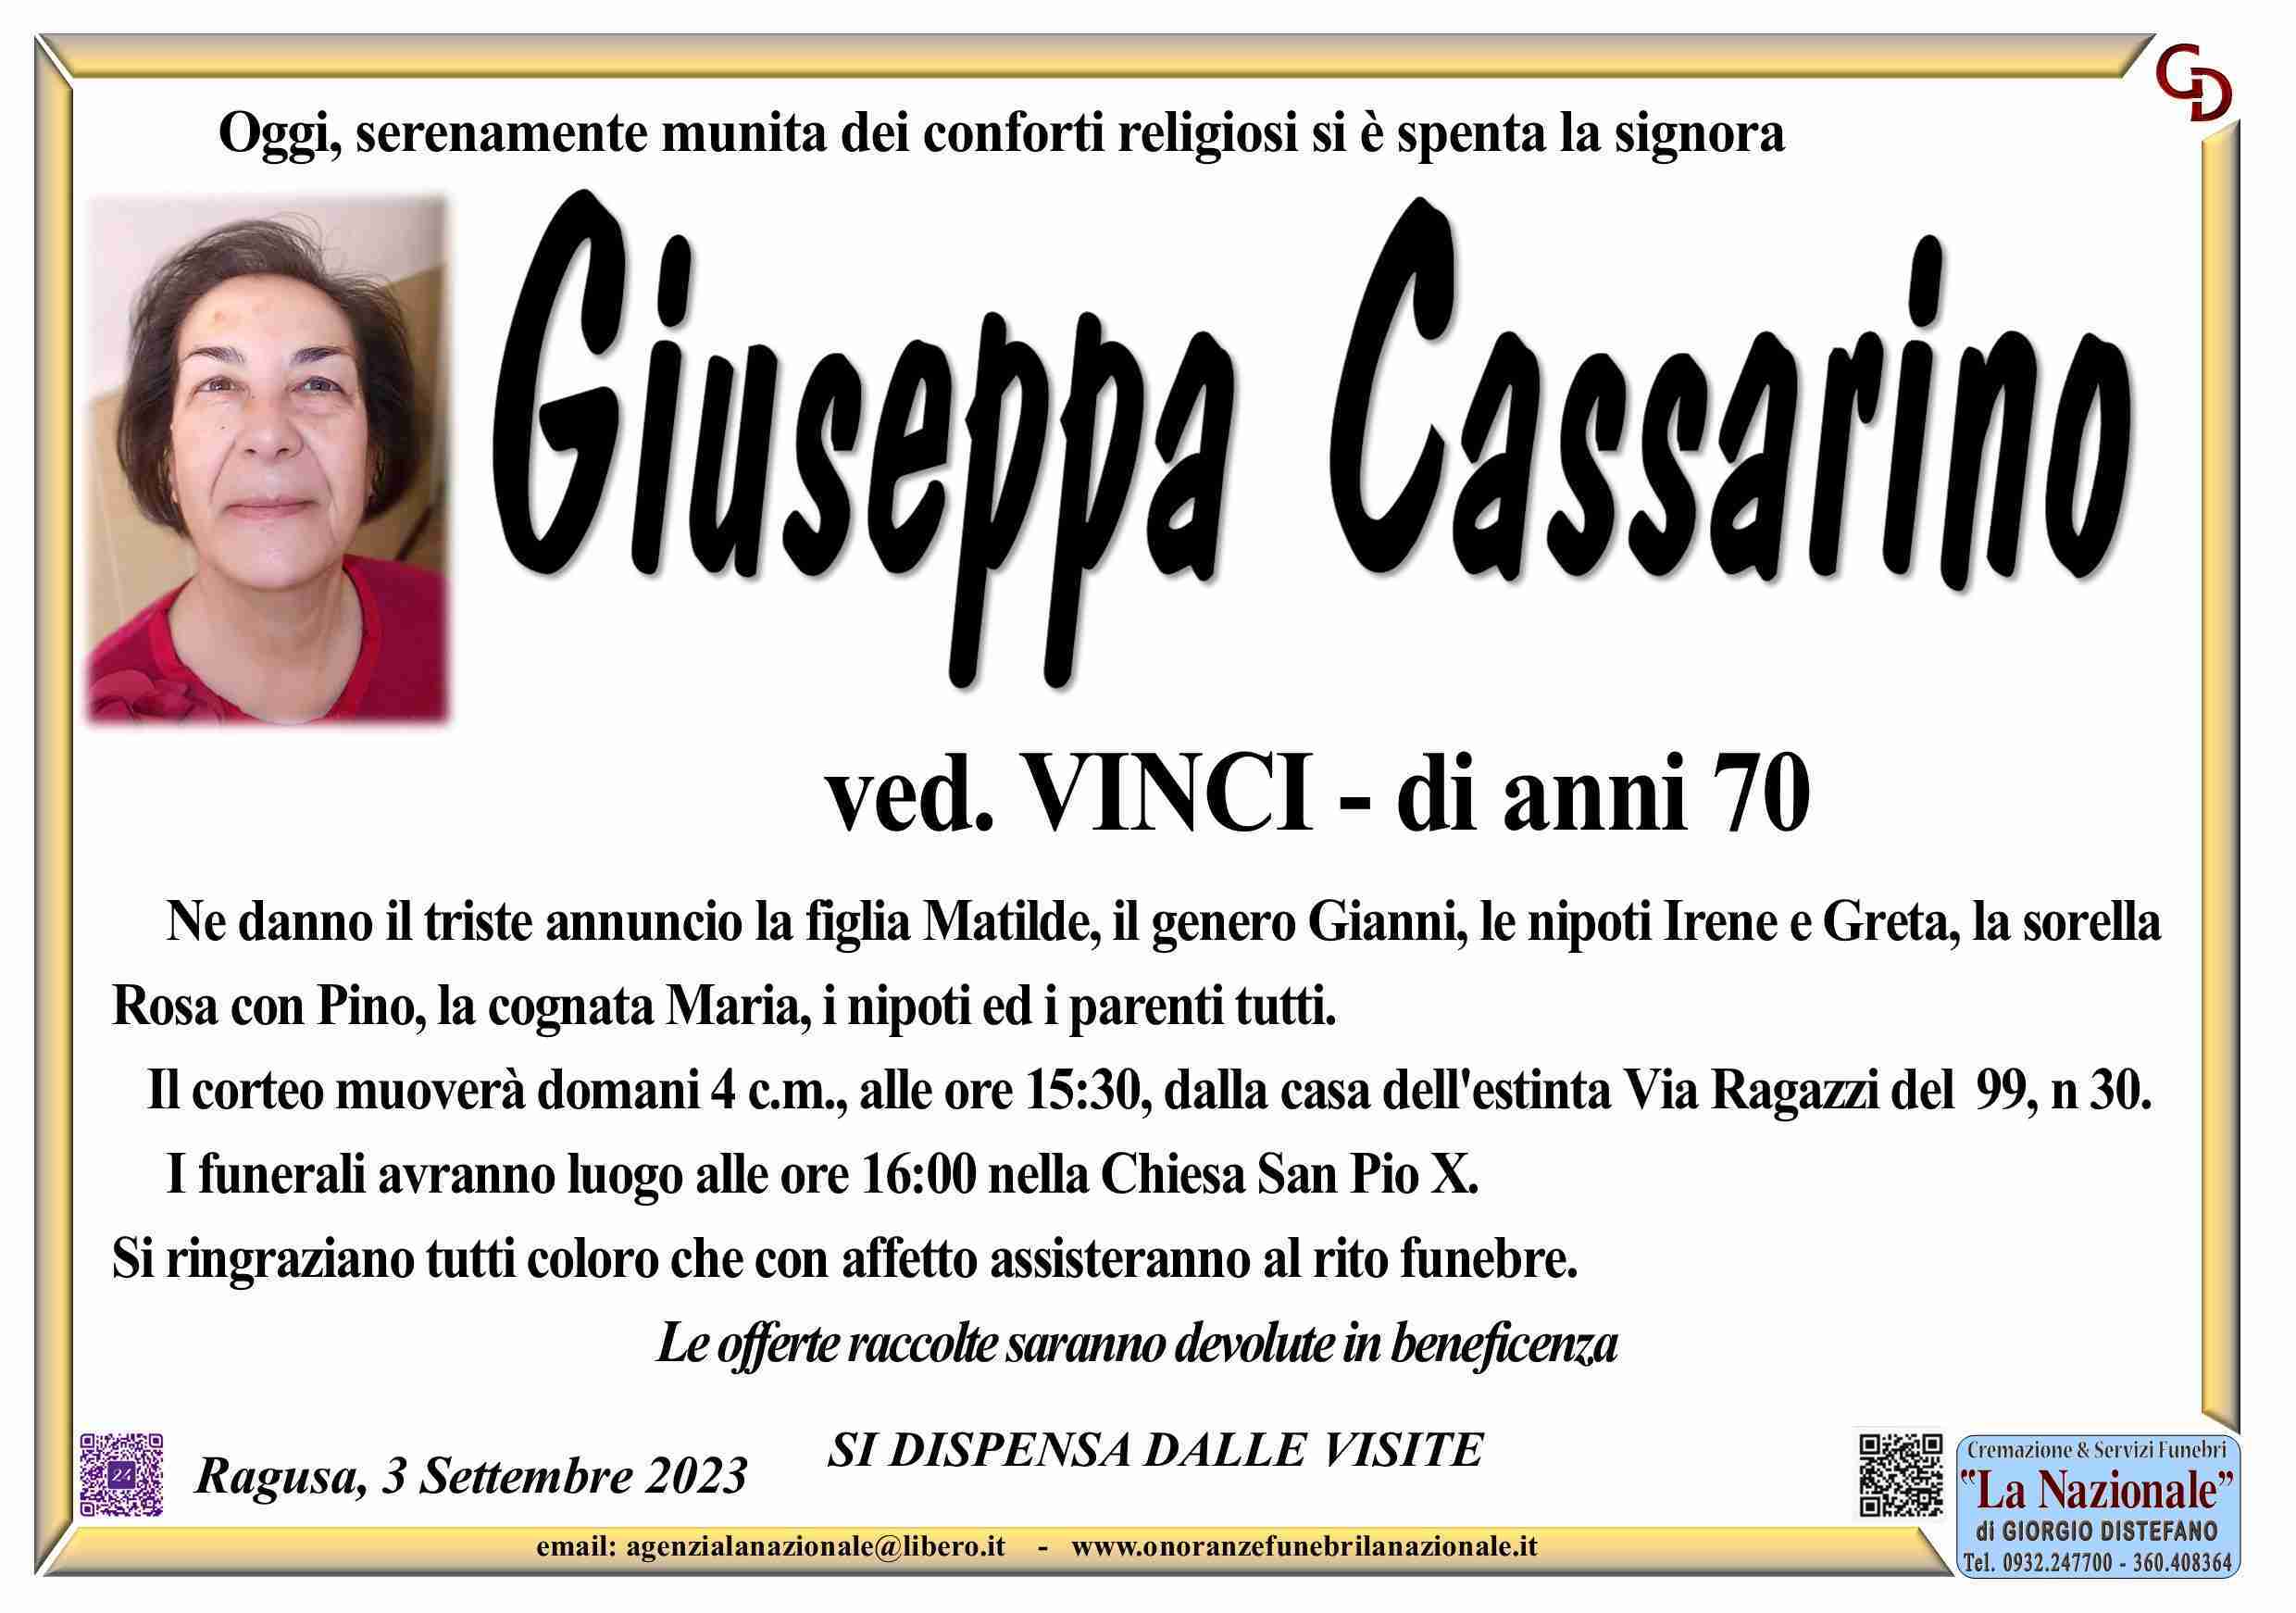 Giuseppa Cassarino